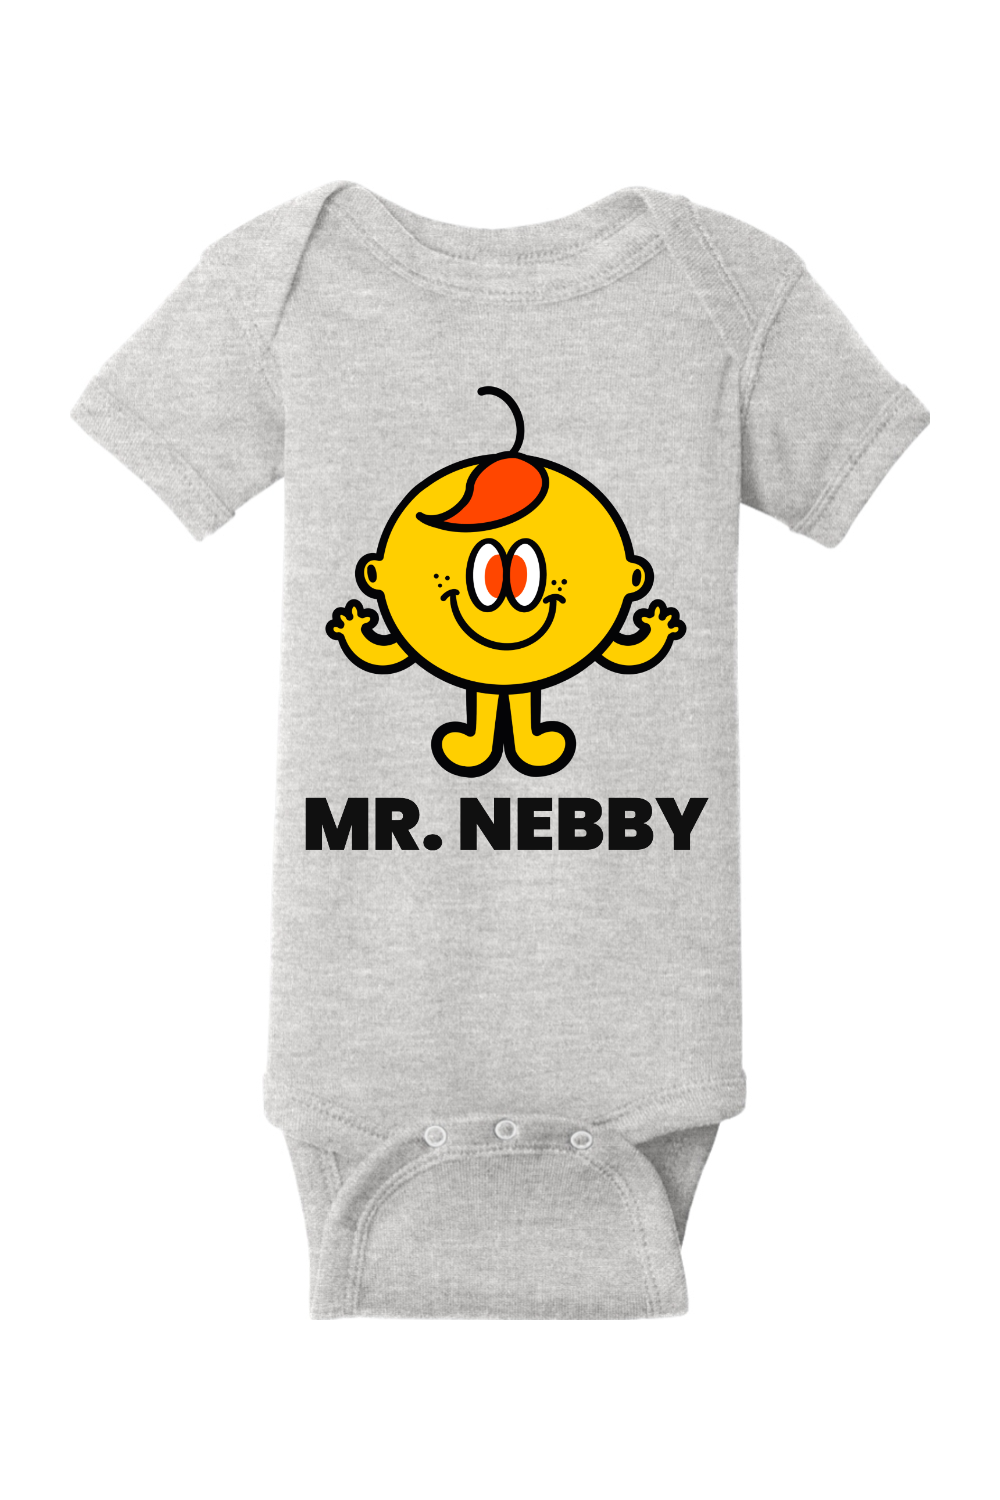 Mr. Nebby - Infant Short Sleeve Baby Rib Bodysuit - Yinzylvania